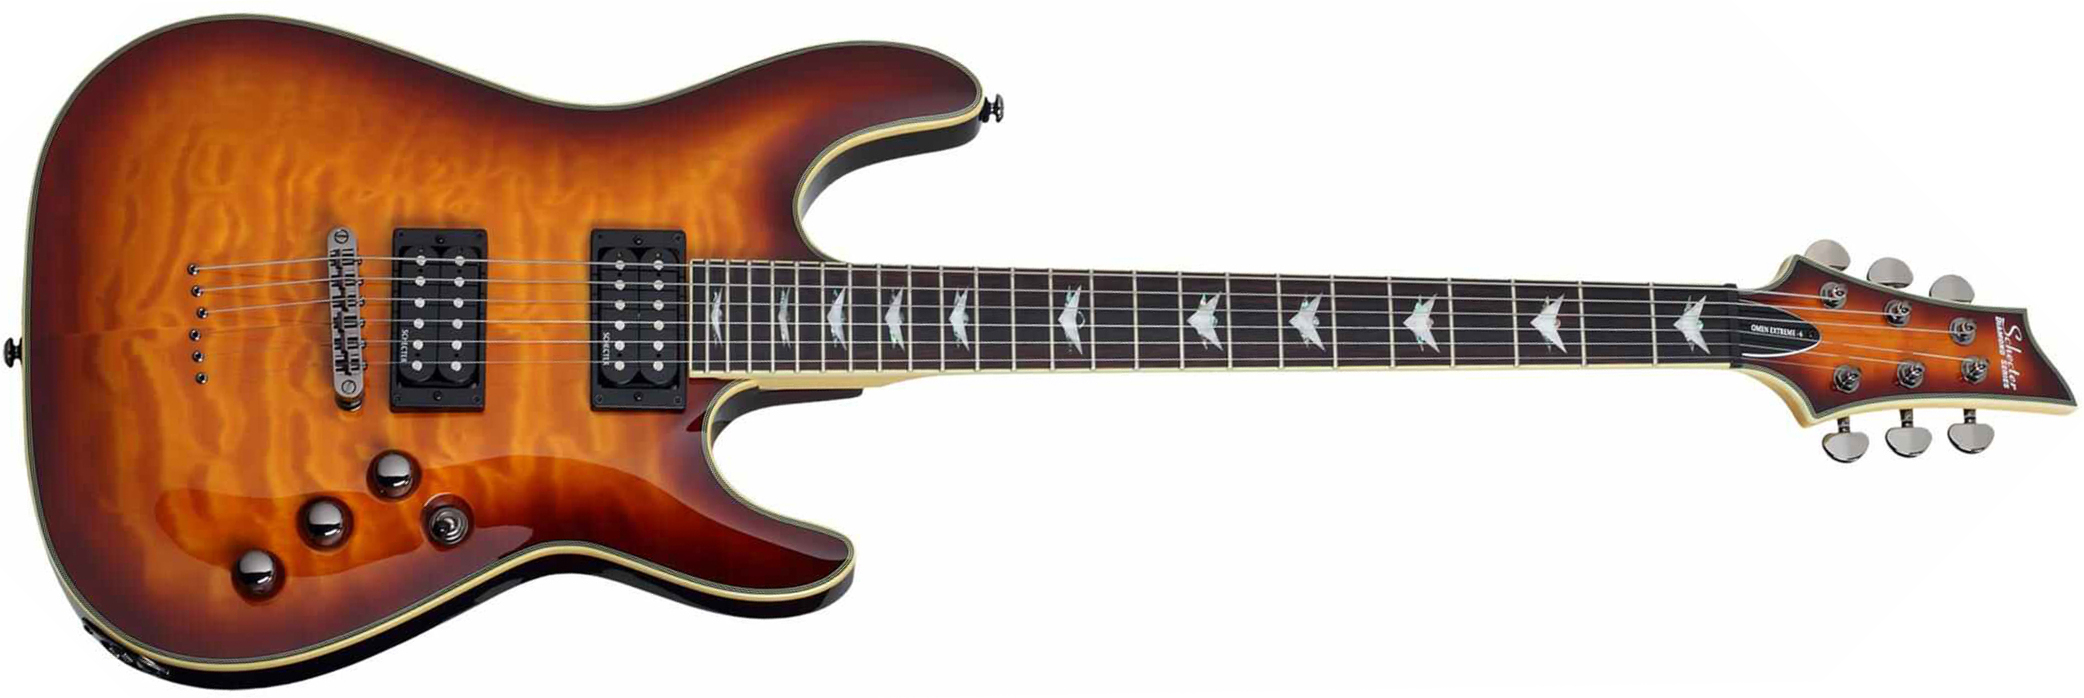 Schecter Omen Extreme-6 2h Ht Rw - Vintage Sunburst - Str shape electric guitar - Main picture